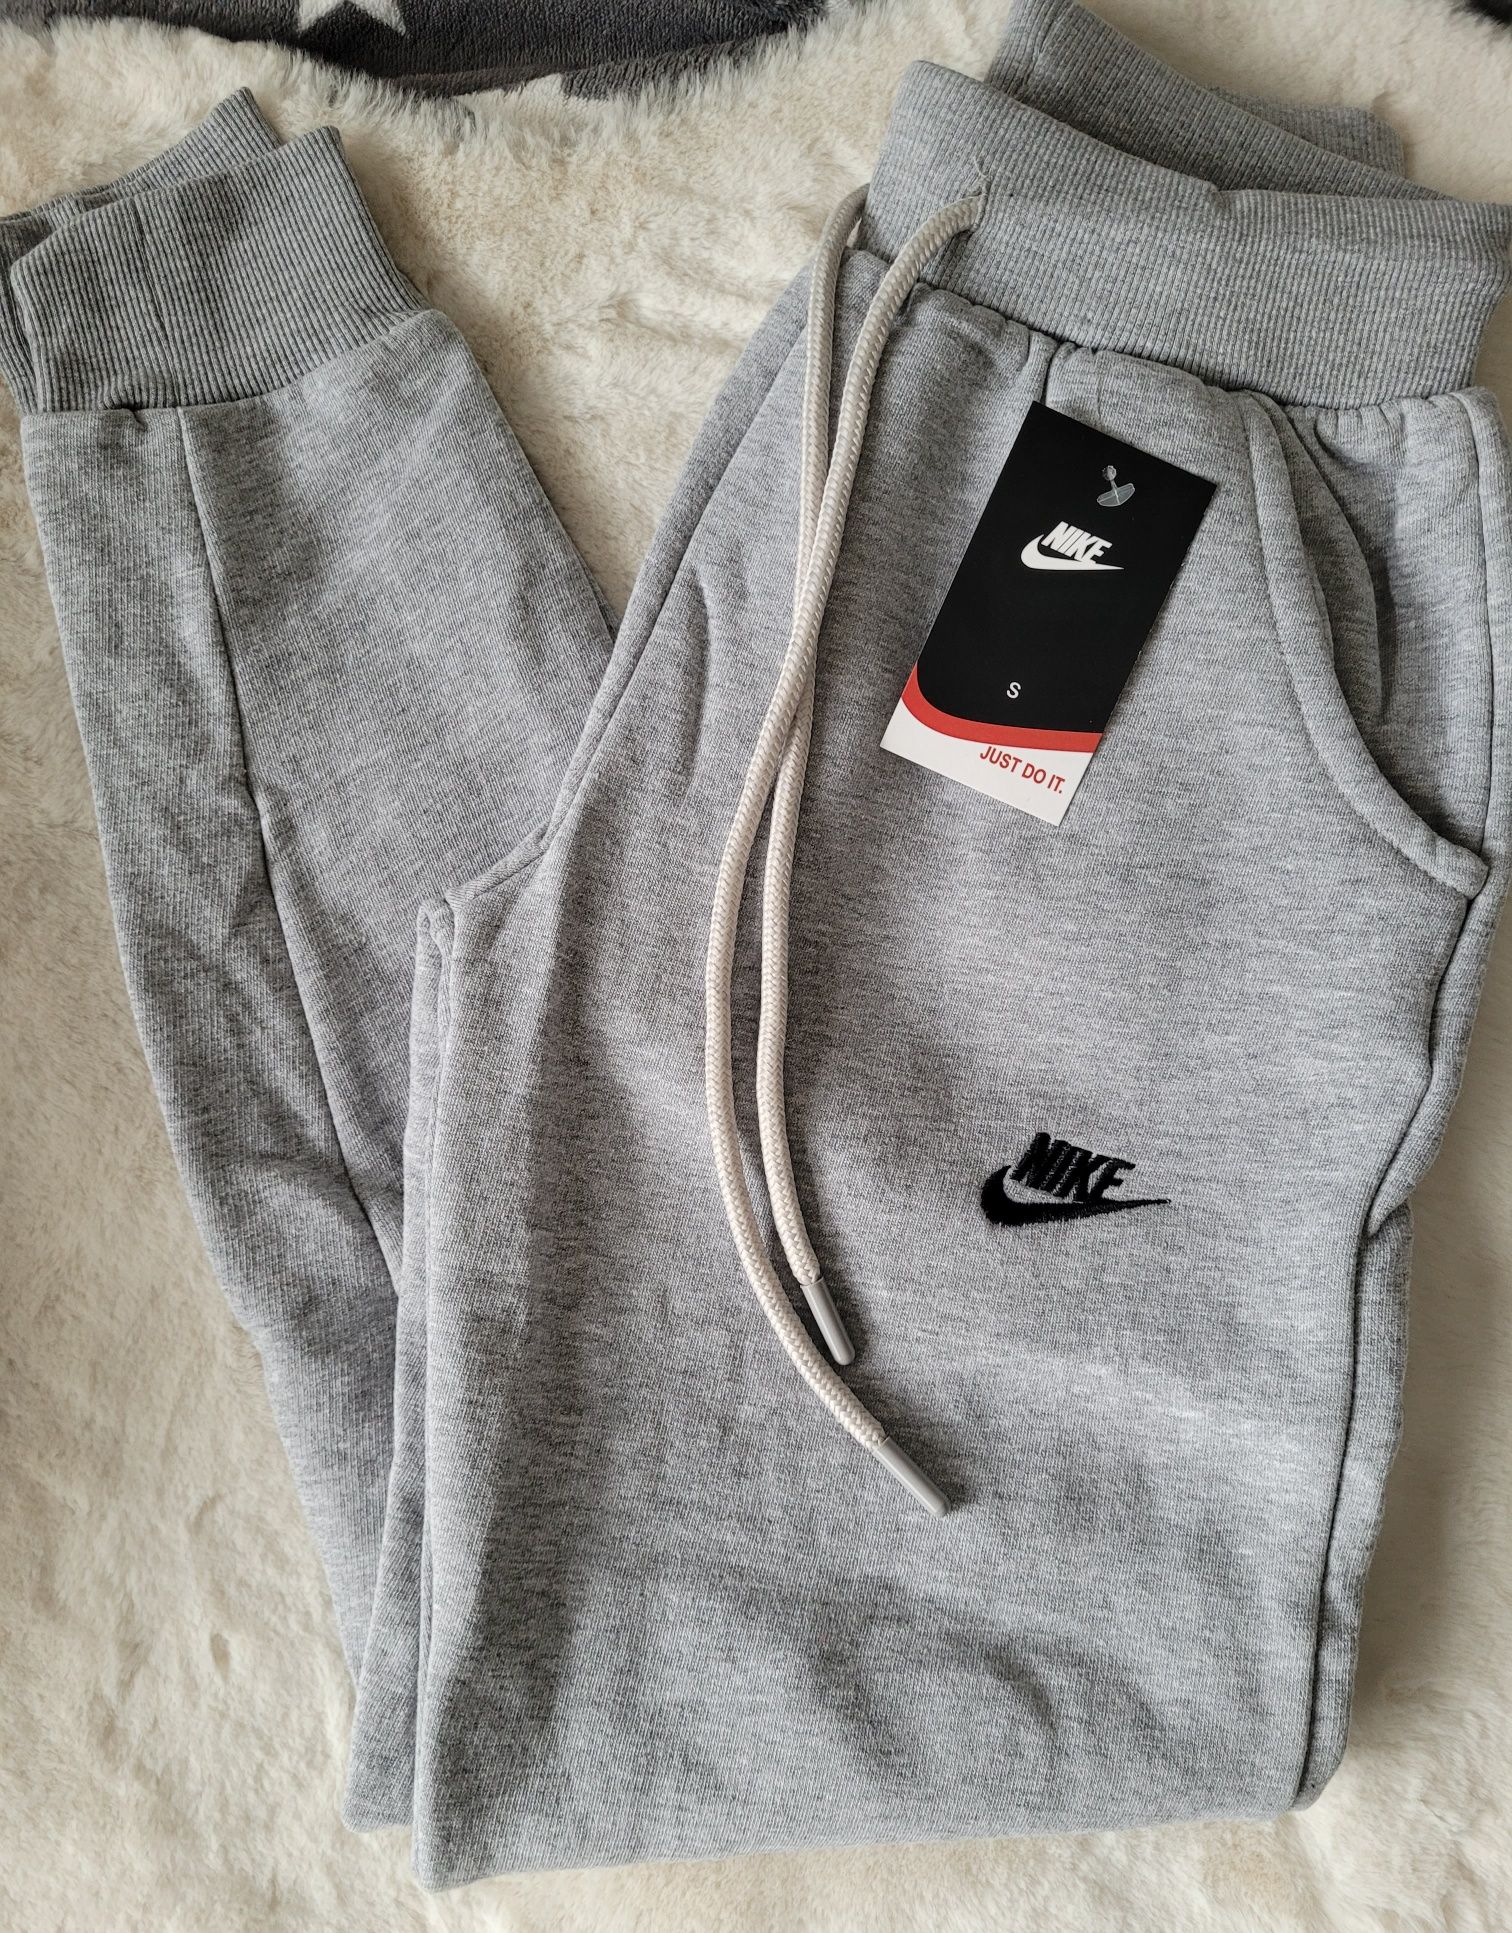 Spodnie dresowe damskie ocieplane z wyszywanym logo Nike